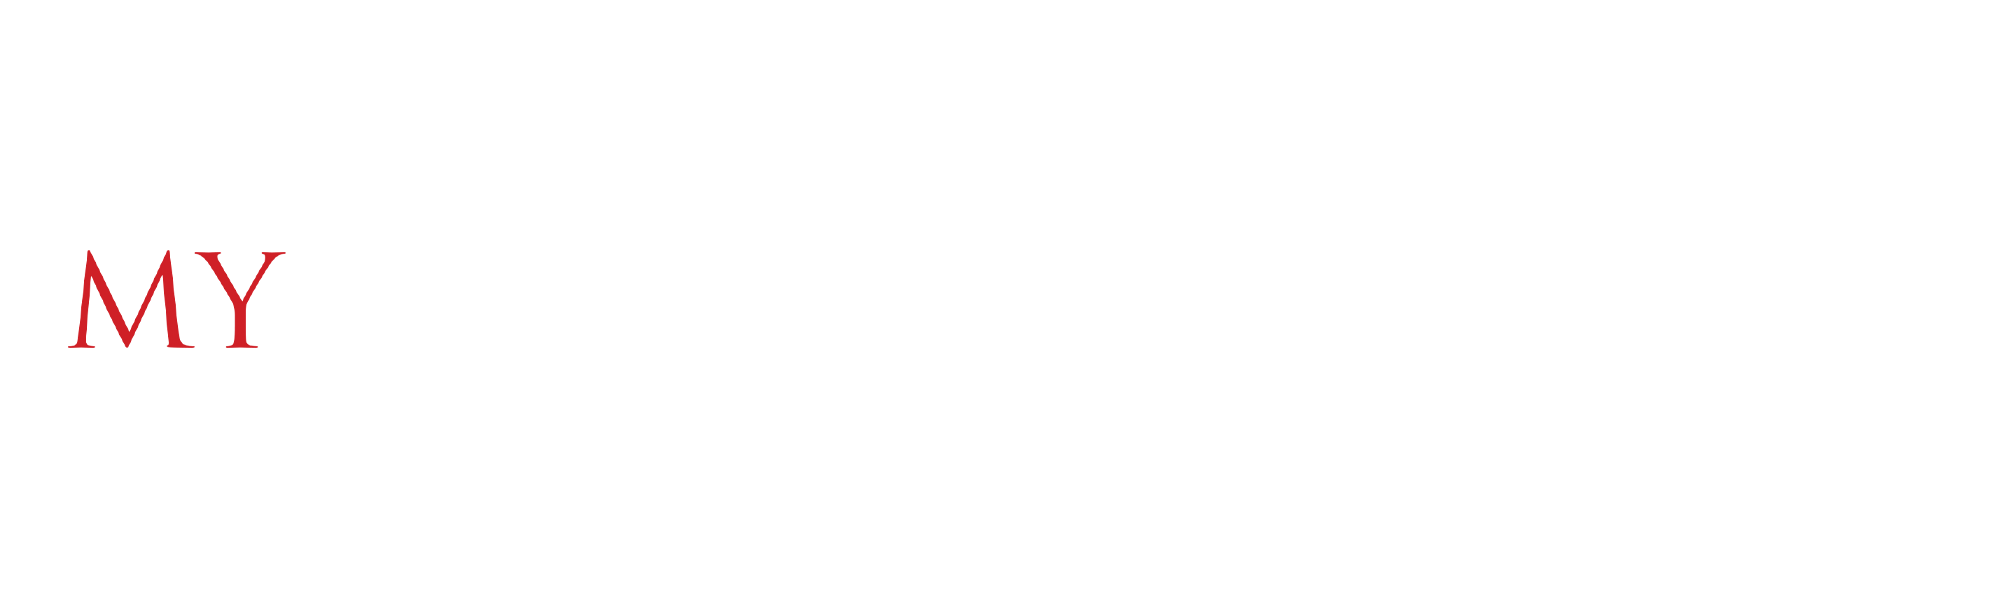 My Amityville Horror